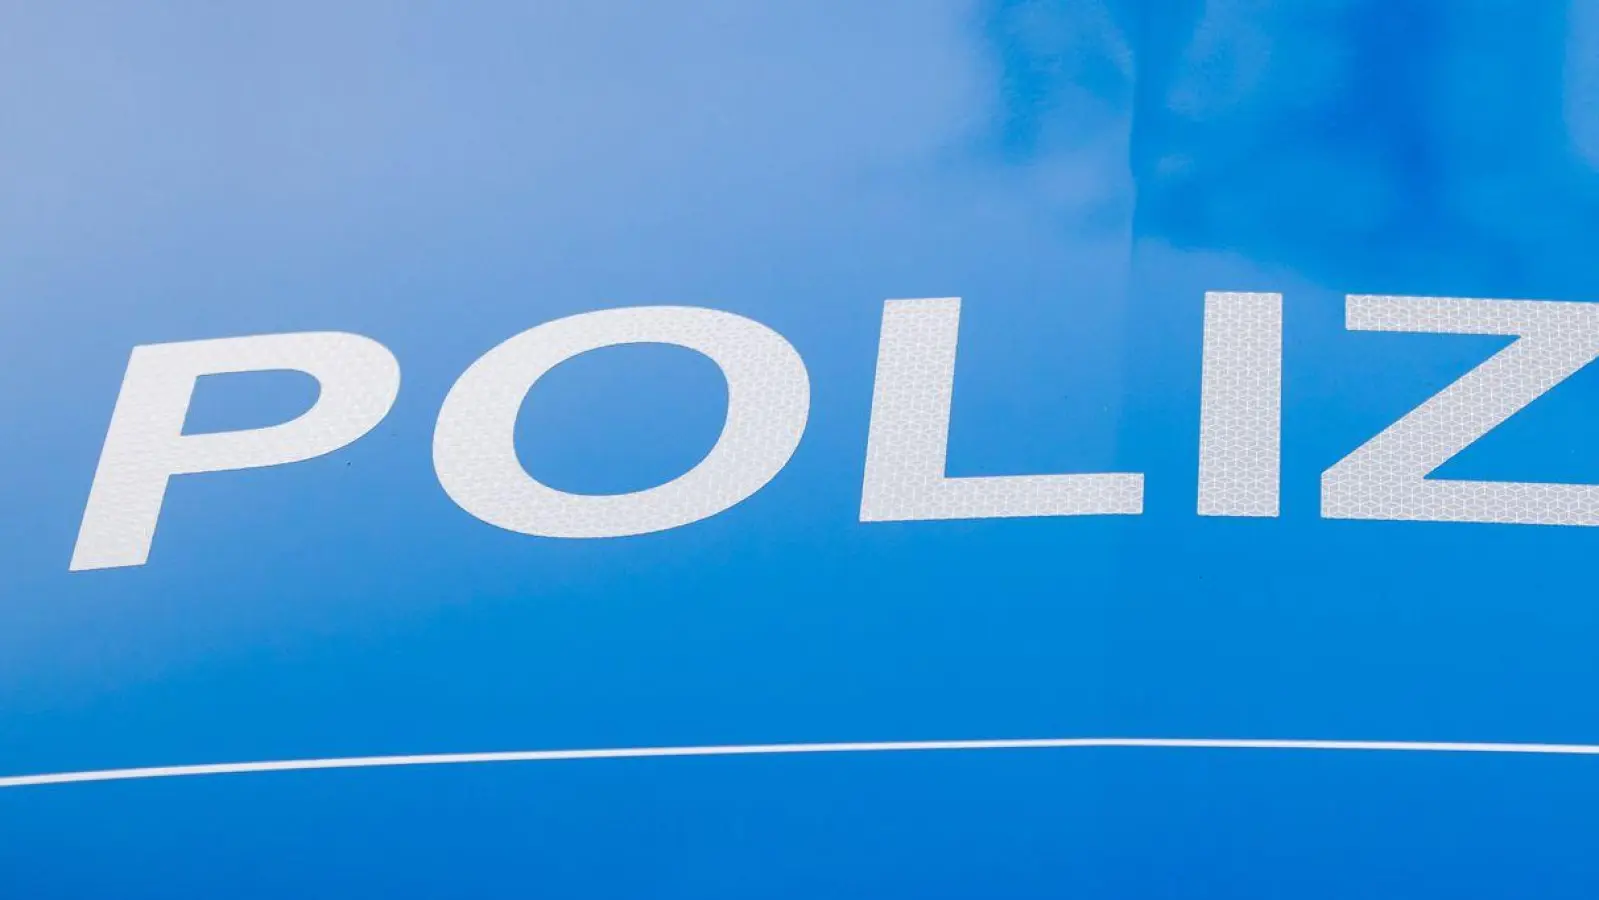 Der Polizei-Schriftzug steht auf einem Einsatzfahrzeug. (Foto: Christoph Soeder/dpa/Symbolbild)